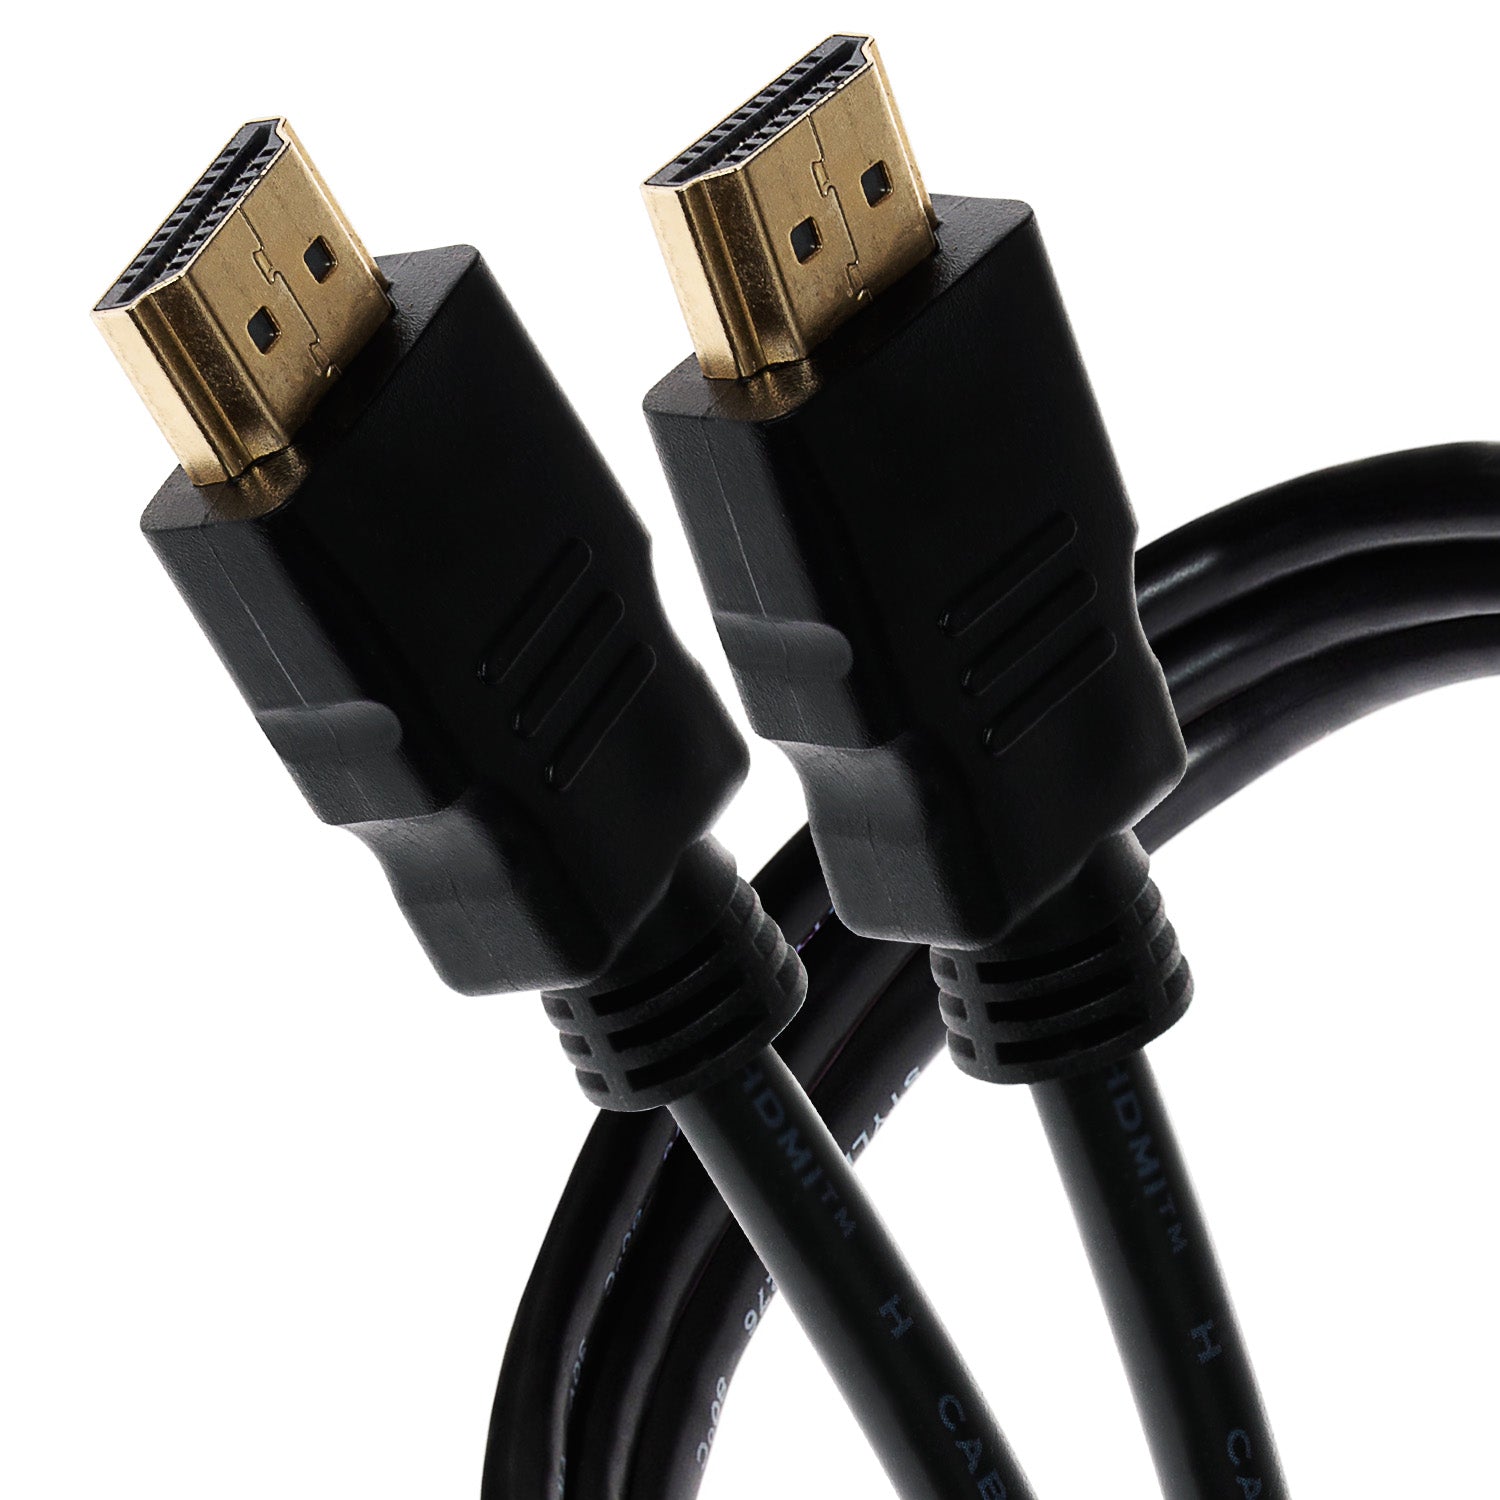 Maplin HDMI to HDMI 4K Ultra HD Cable - Black, 1.5m - maplin.co.uk